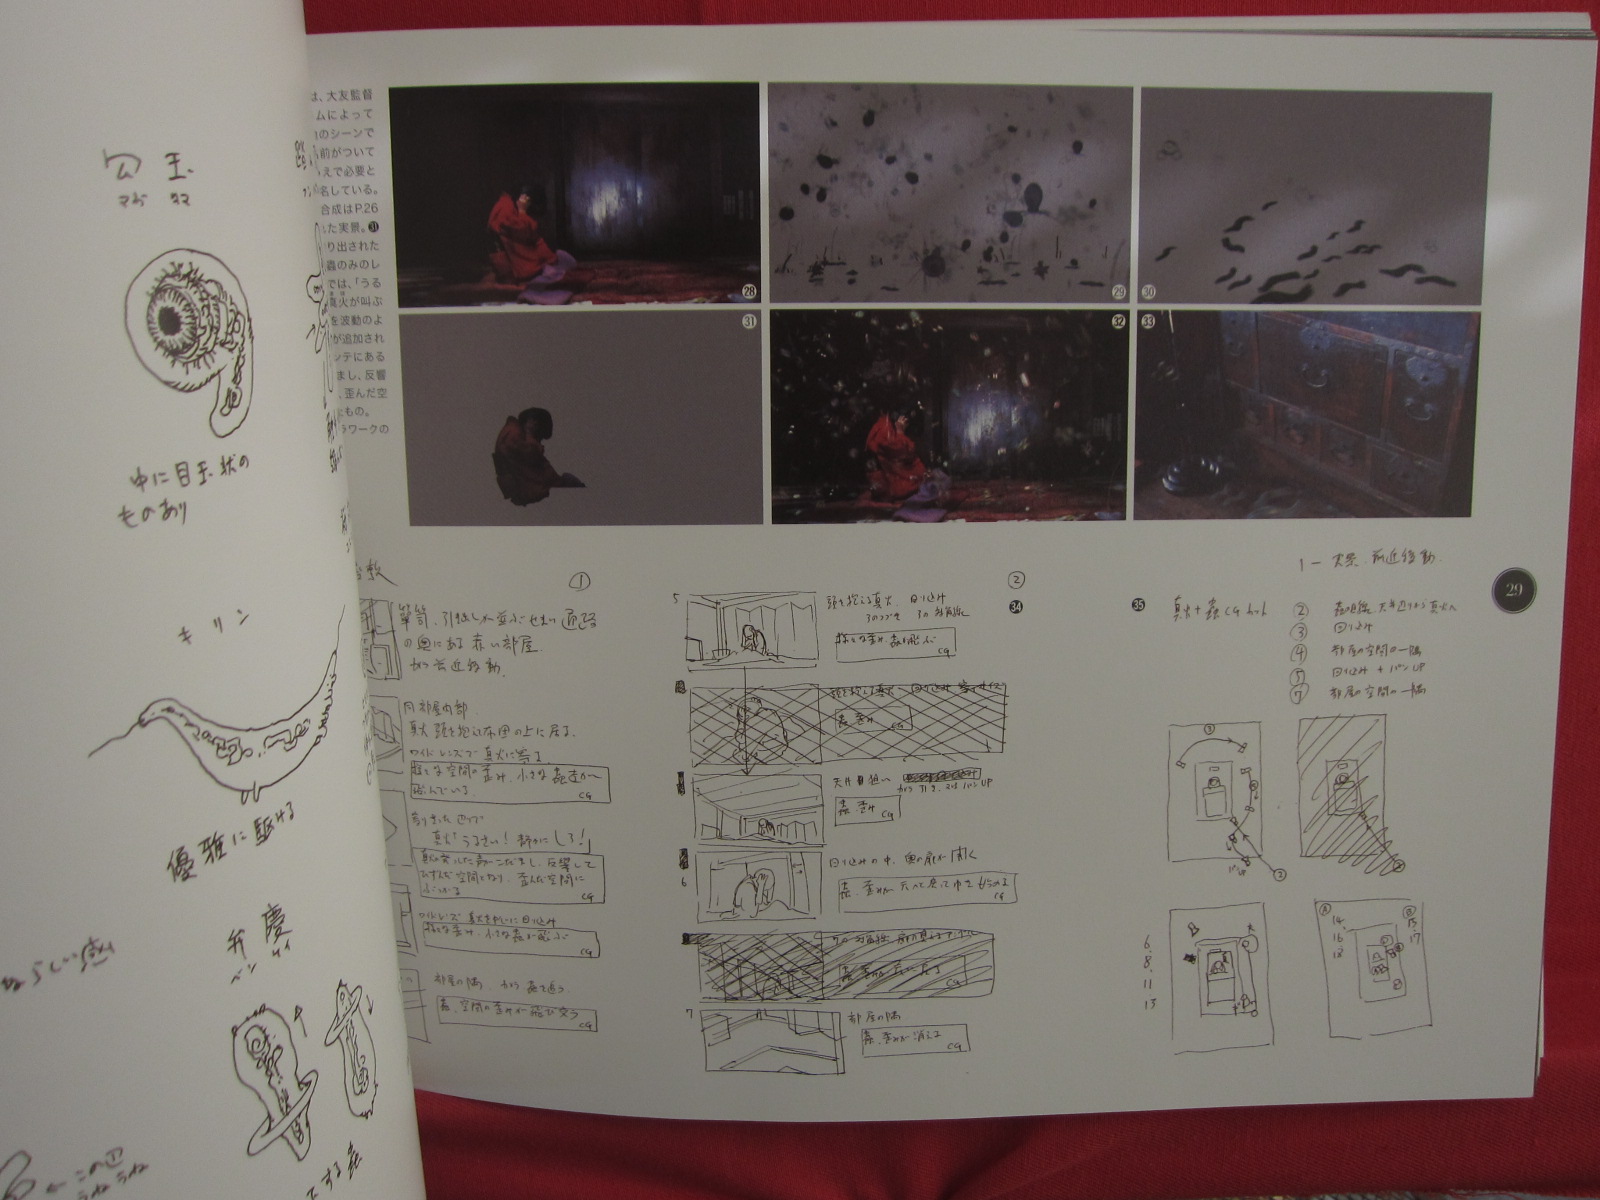 Katsuhiro Otomo The Visual Works of Mushishi Officiak Making Book